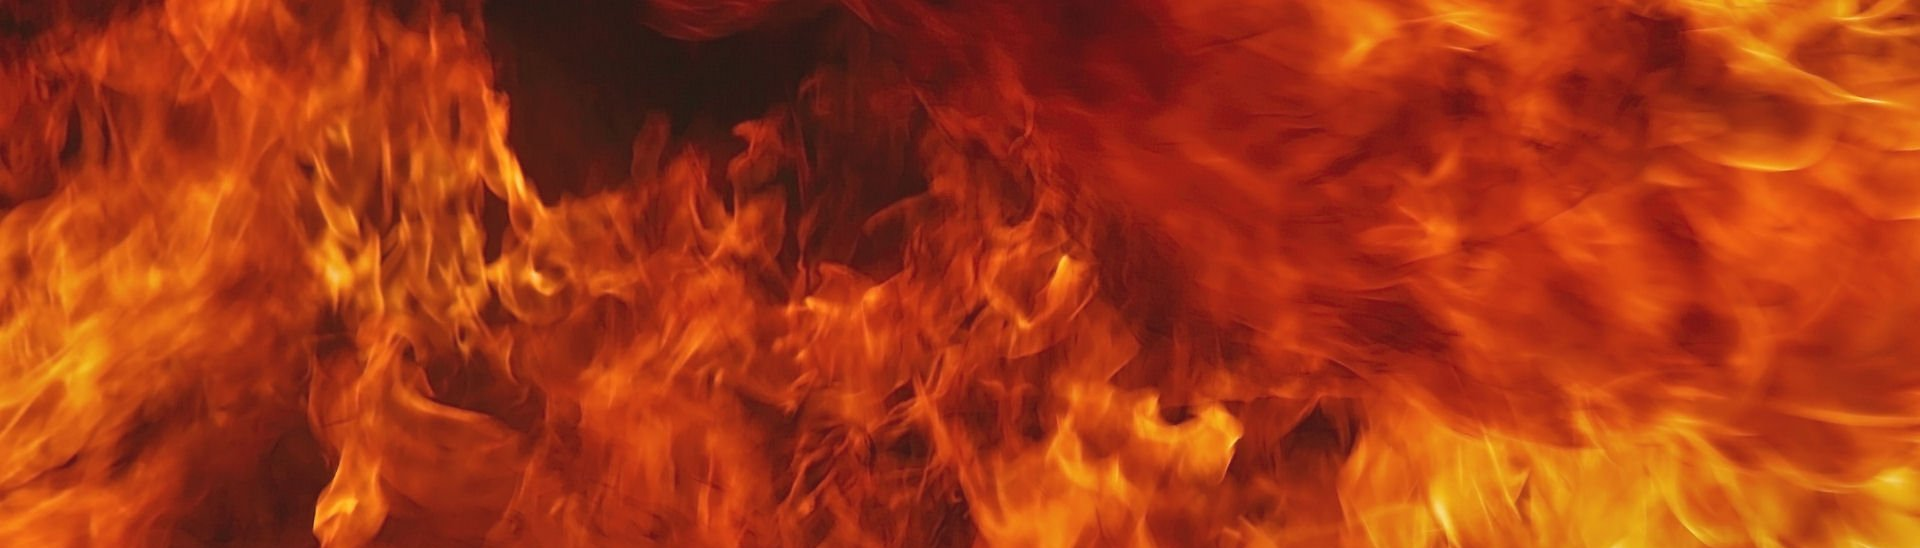 В Новогрудском районе горел дачный дом: спасатели ликвидировали пожар